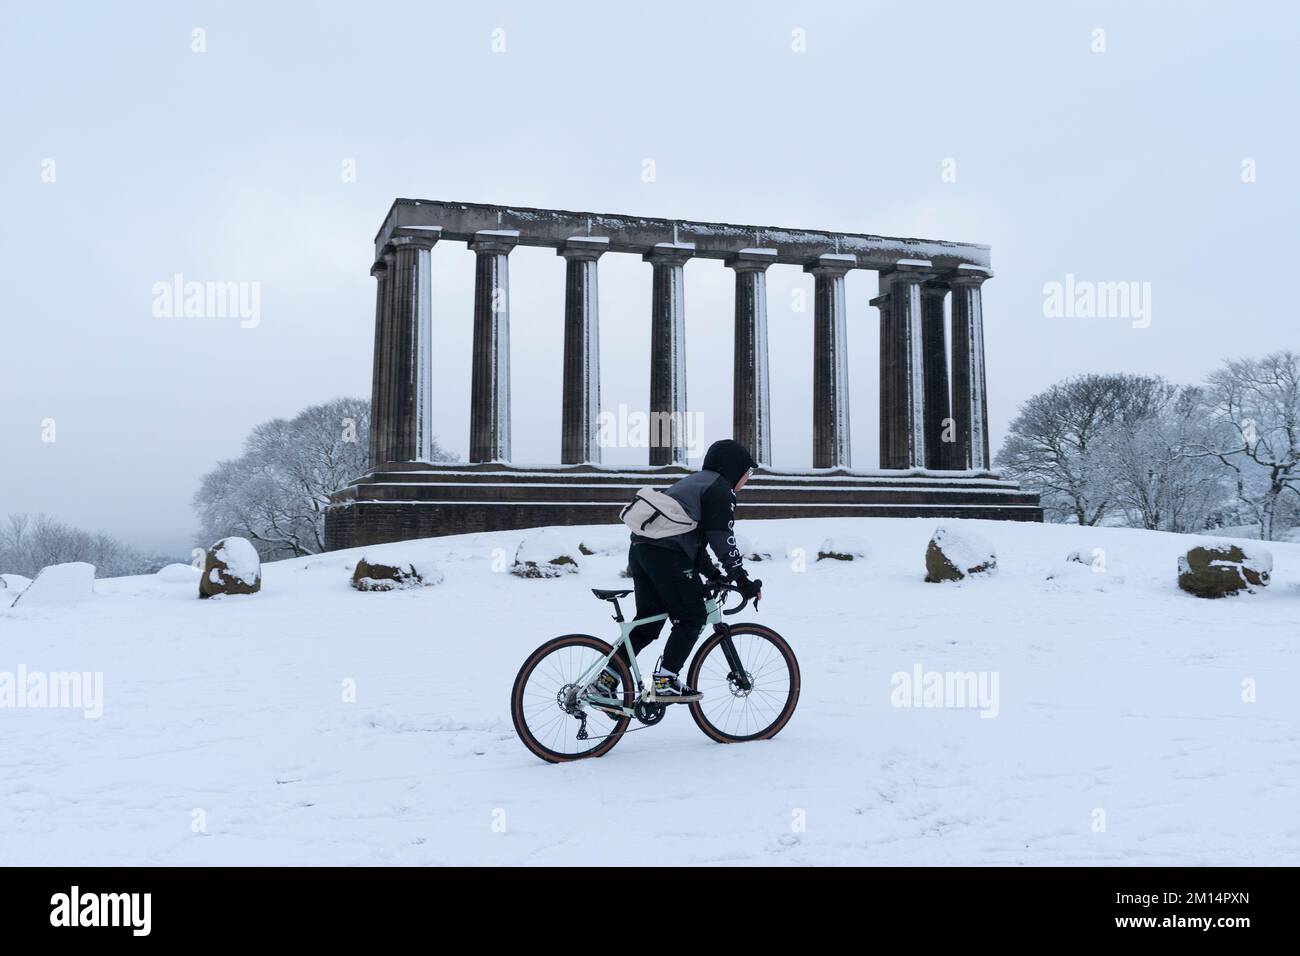 Edimburgo, Scozia, Regno Unito. 10th dicembre 2022. Vista su Calton Hill nella neve. Questa mattina ad Edimburgo è caduta una neve pesante, mentre le condizioni climatiche artiche del nord continuano a colpire gran parte del Regno Unito . Iain Masterton/Alamy Live News Foto Stock